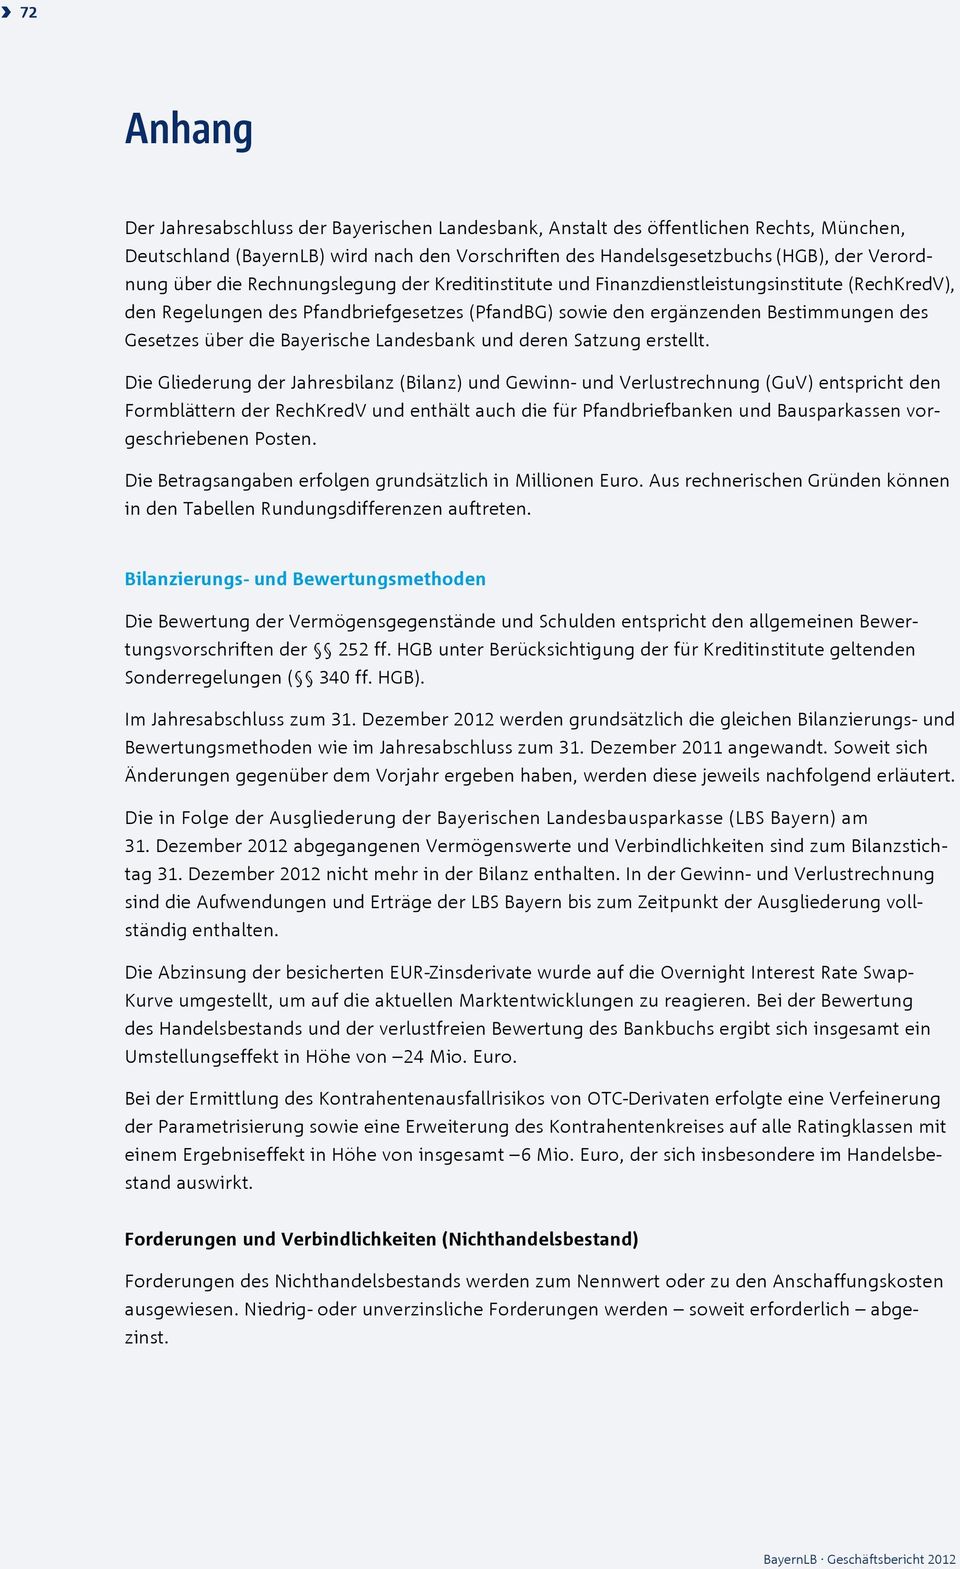 Bayerische Landesbank und deren Satzung erstellt.